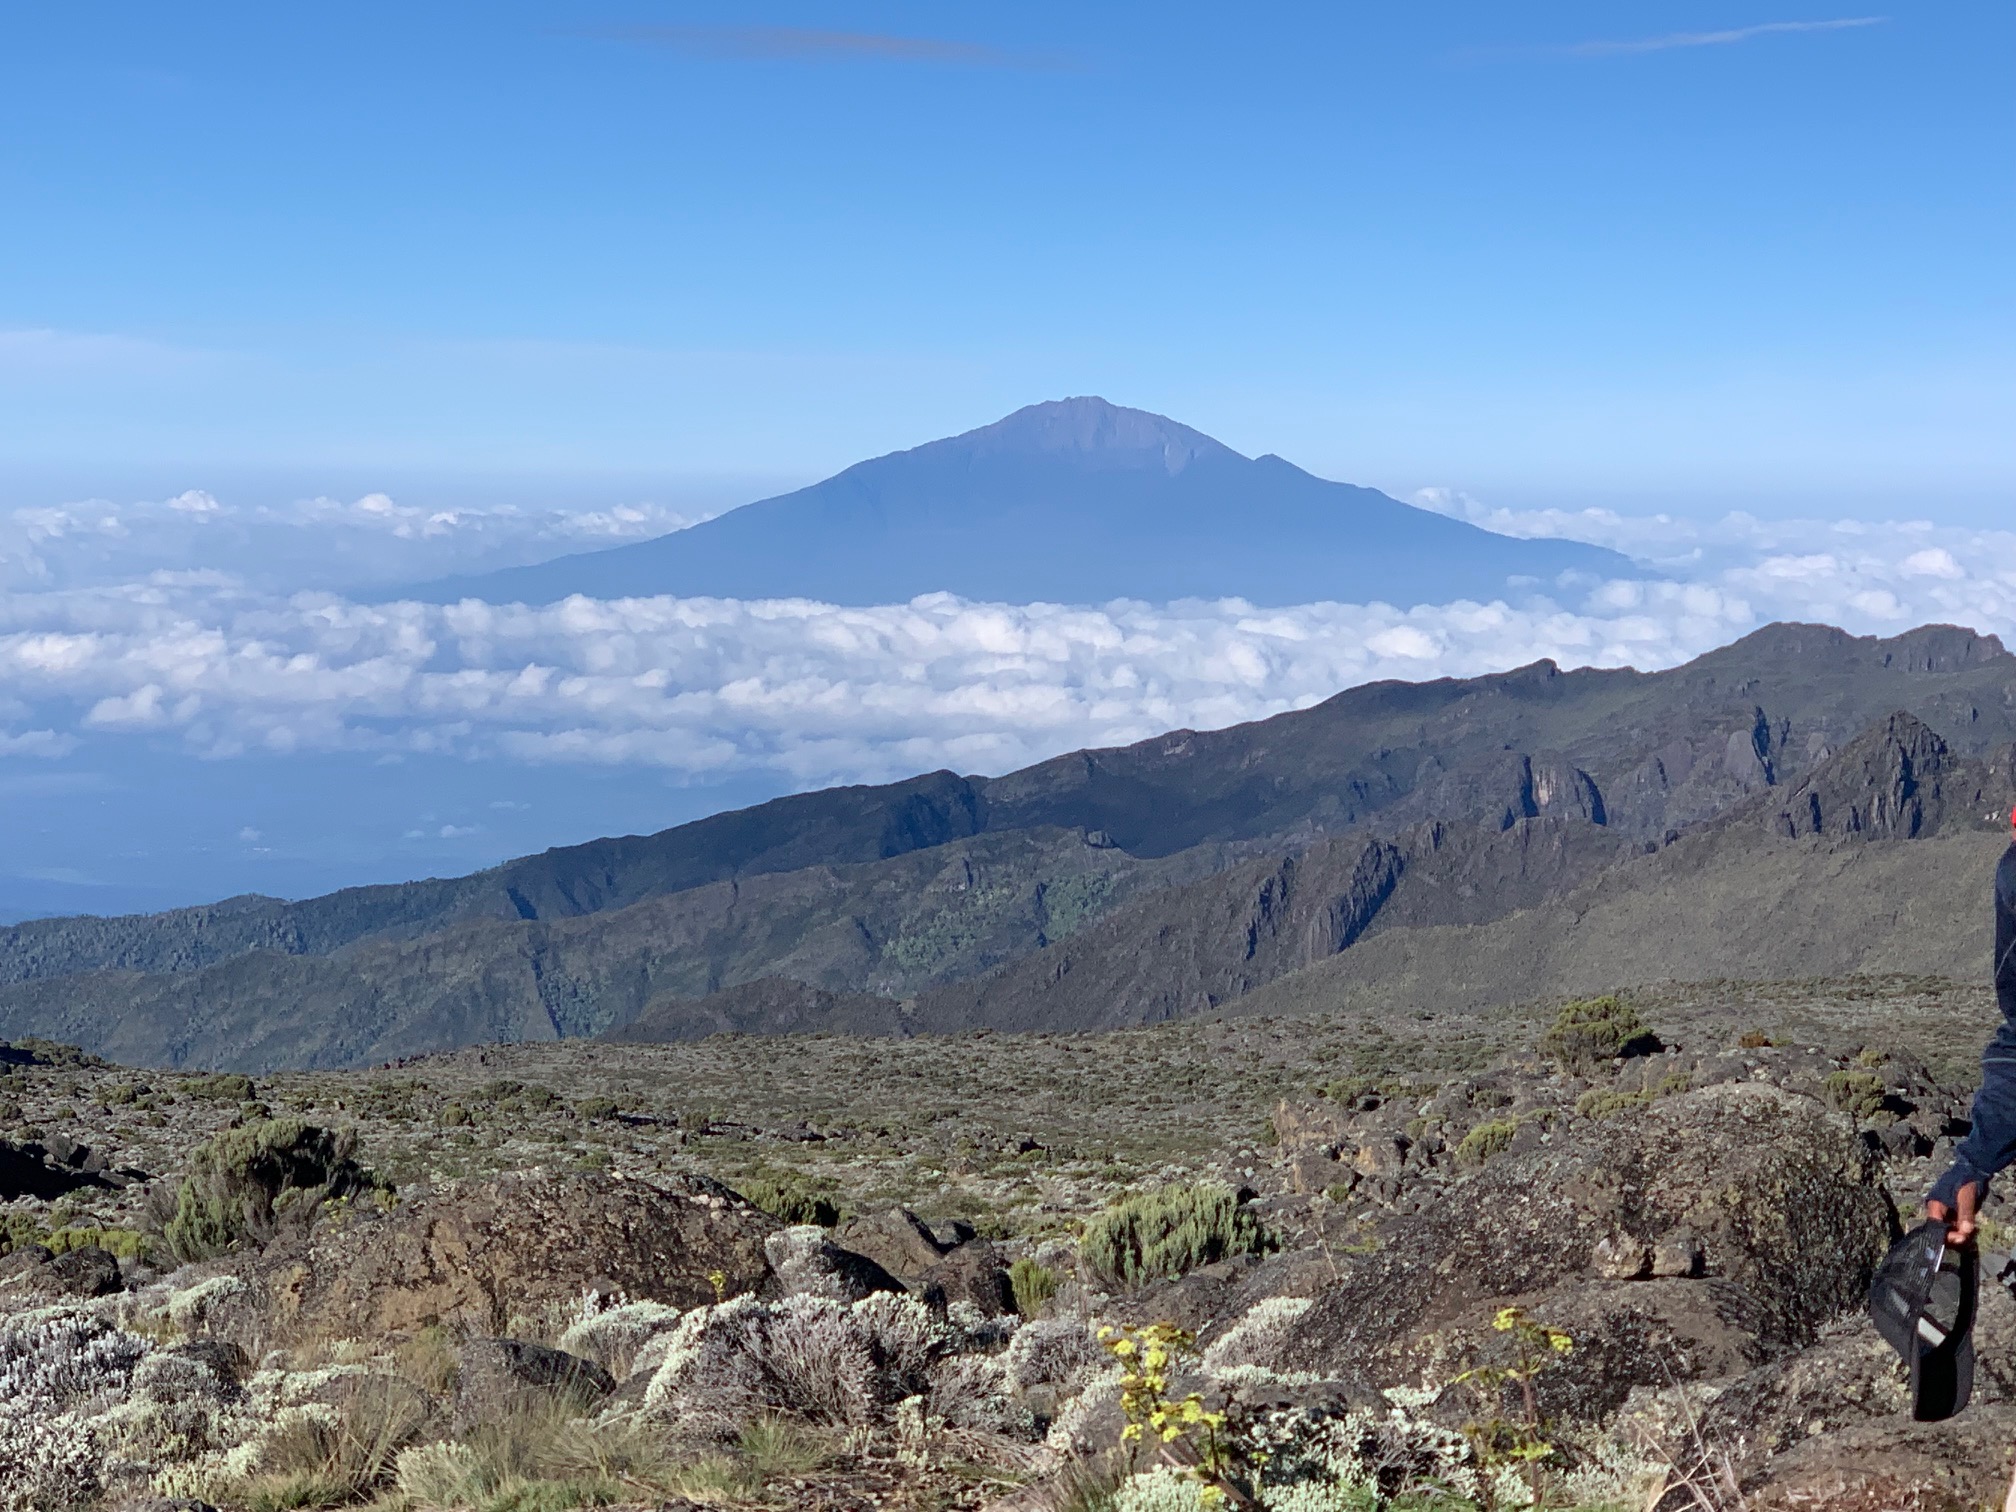 Mount Meru from Kilimanjaro